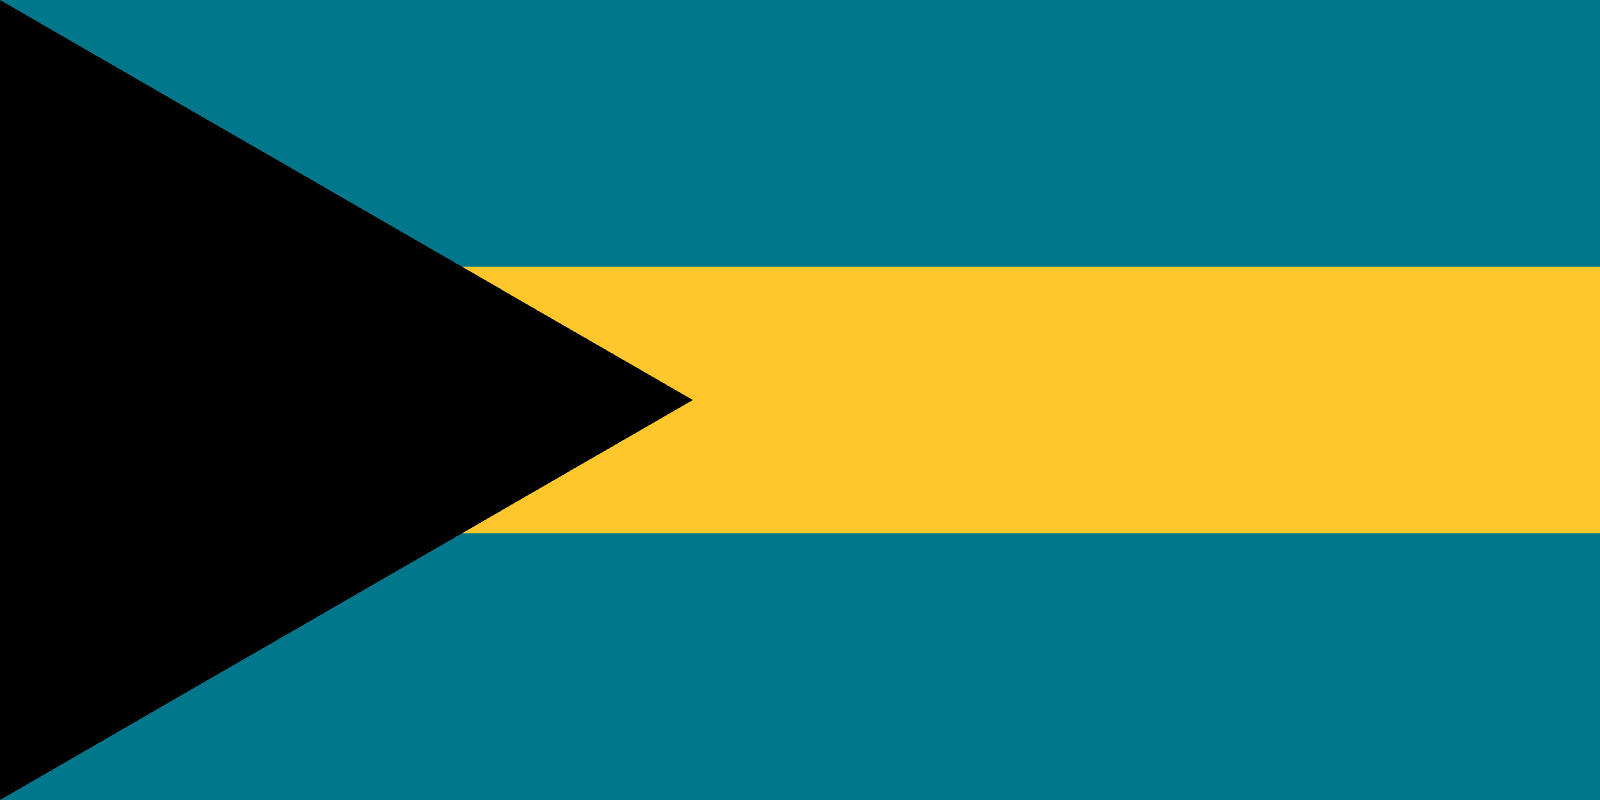 Bahamalar